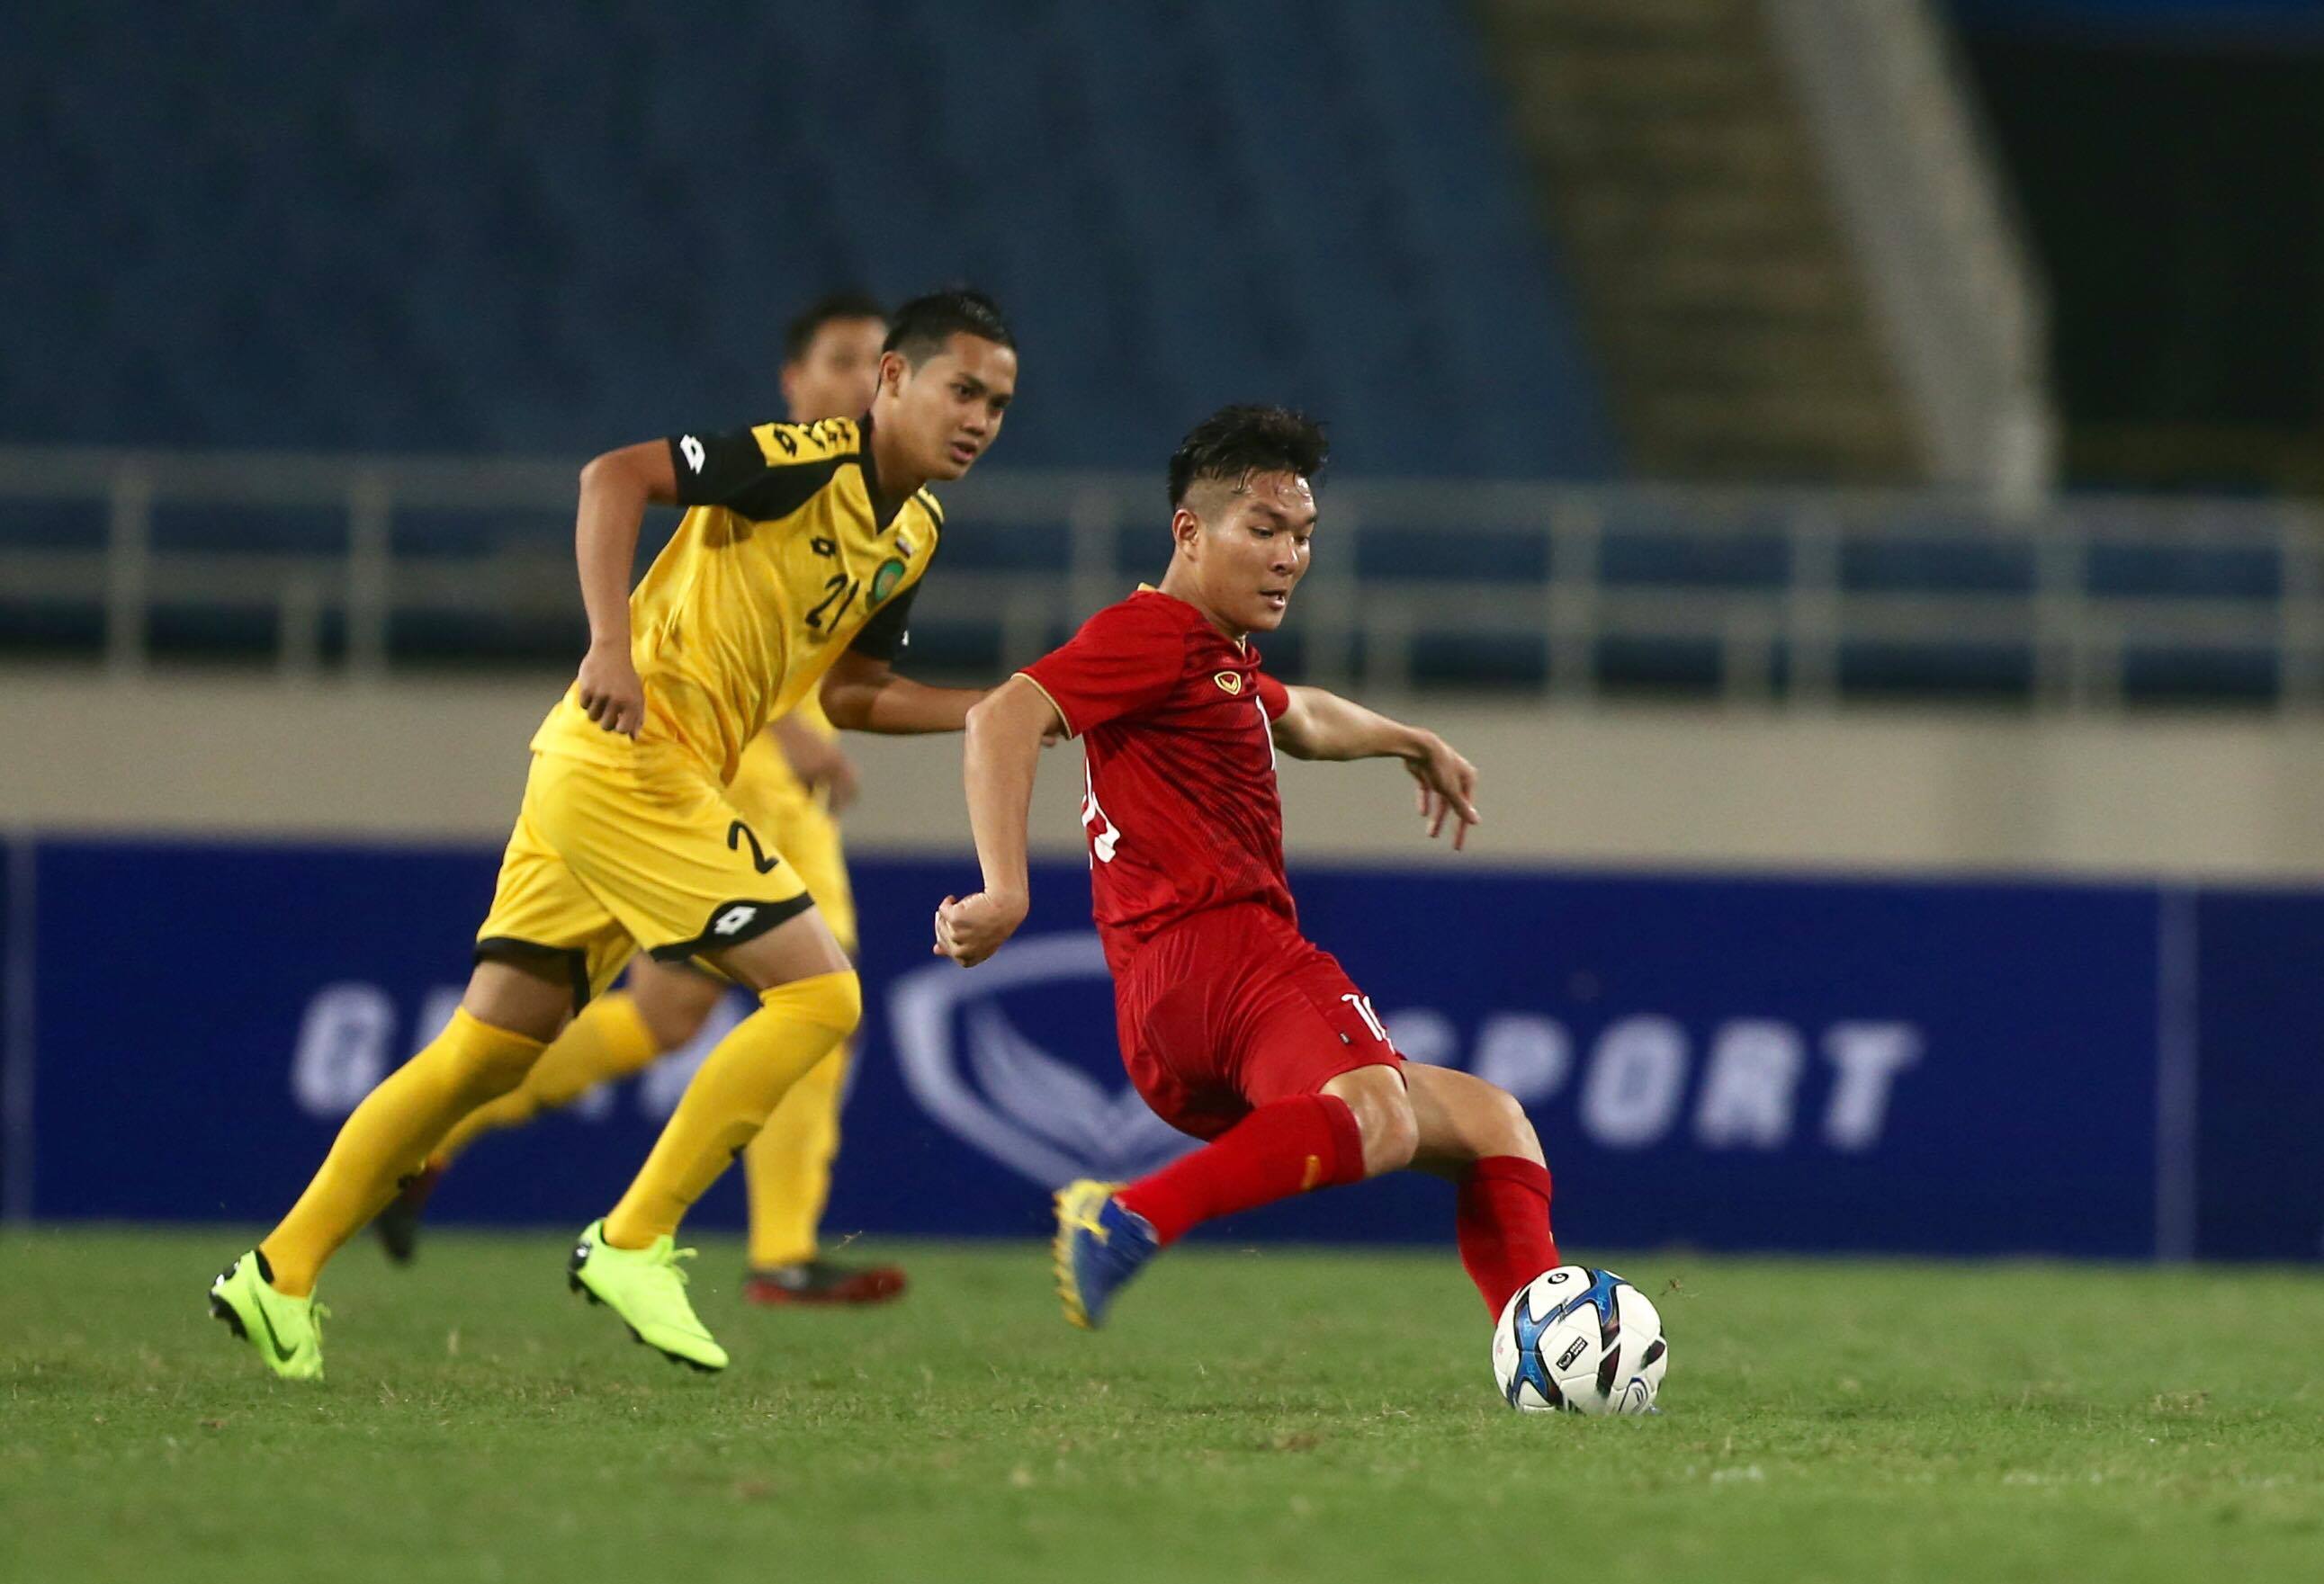 Điểm nhấn U23 Việt Nam vs U23 Brunei (6-0): Đức Chinh giải tỏa áp lực, Đình Trọng trở lại...